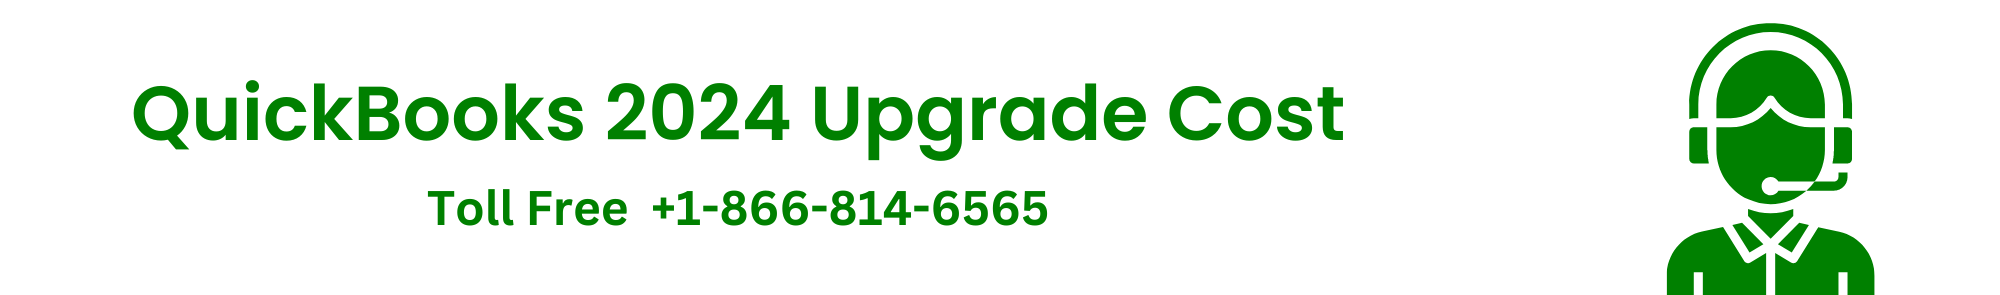 QuickBooks-2024-upgrade-cost